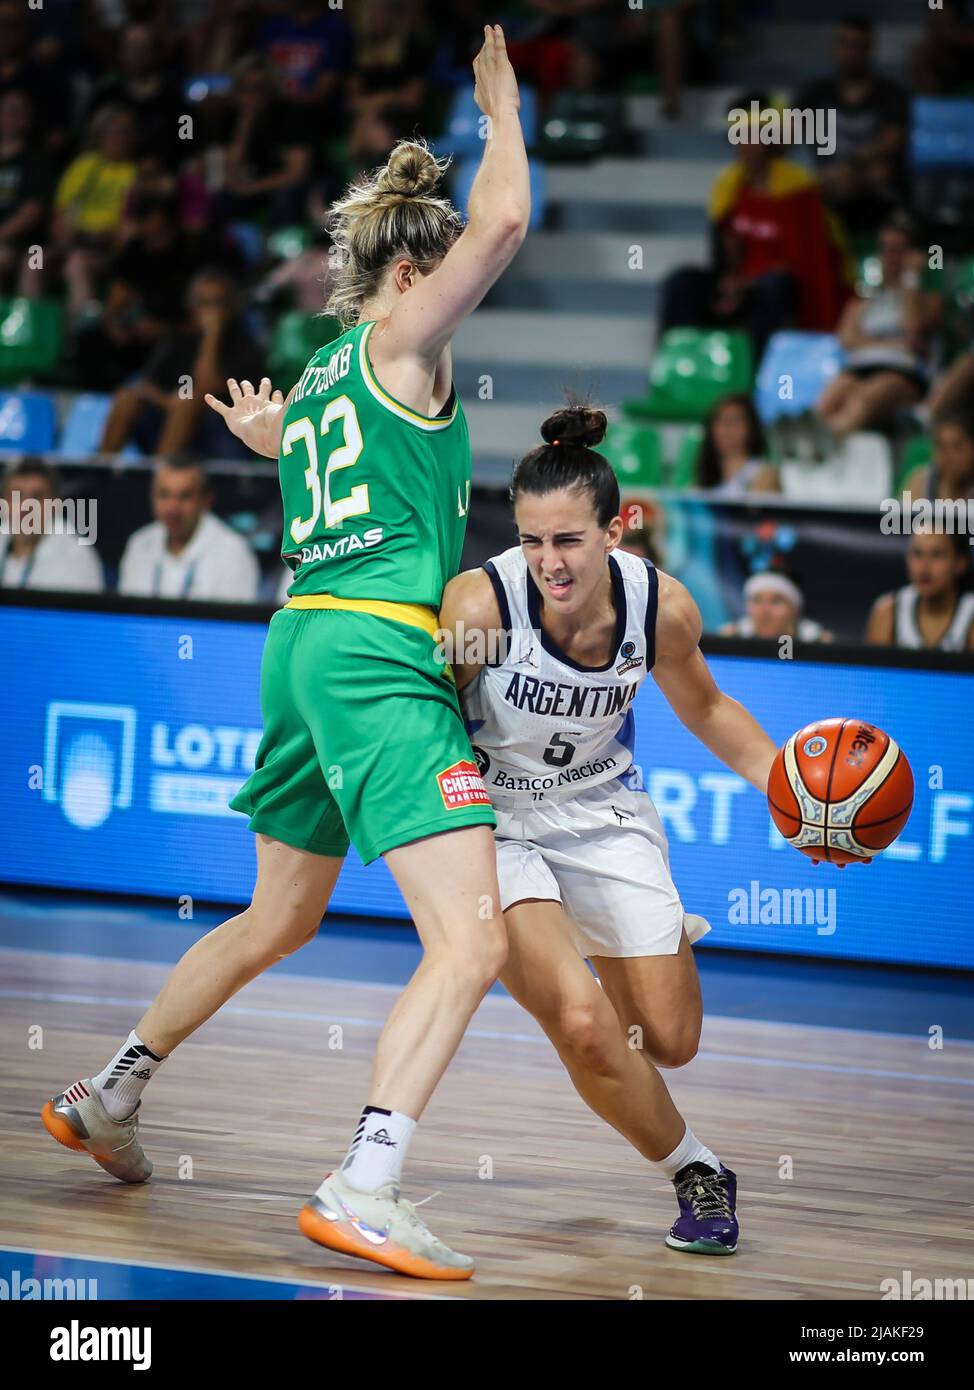 Espagne, Ténérife, 23 septembre 2018: Le joueur de basket-ball argentin Macarena Durso en action pendant la coupe du monde de basket-ball féminin FIBA 2018 en Espagne. Banque D'Images